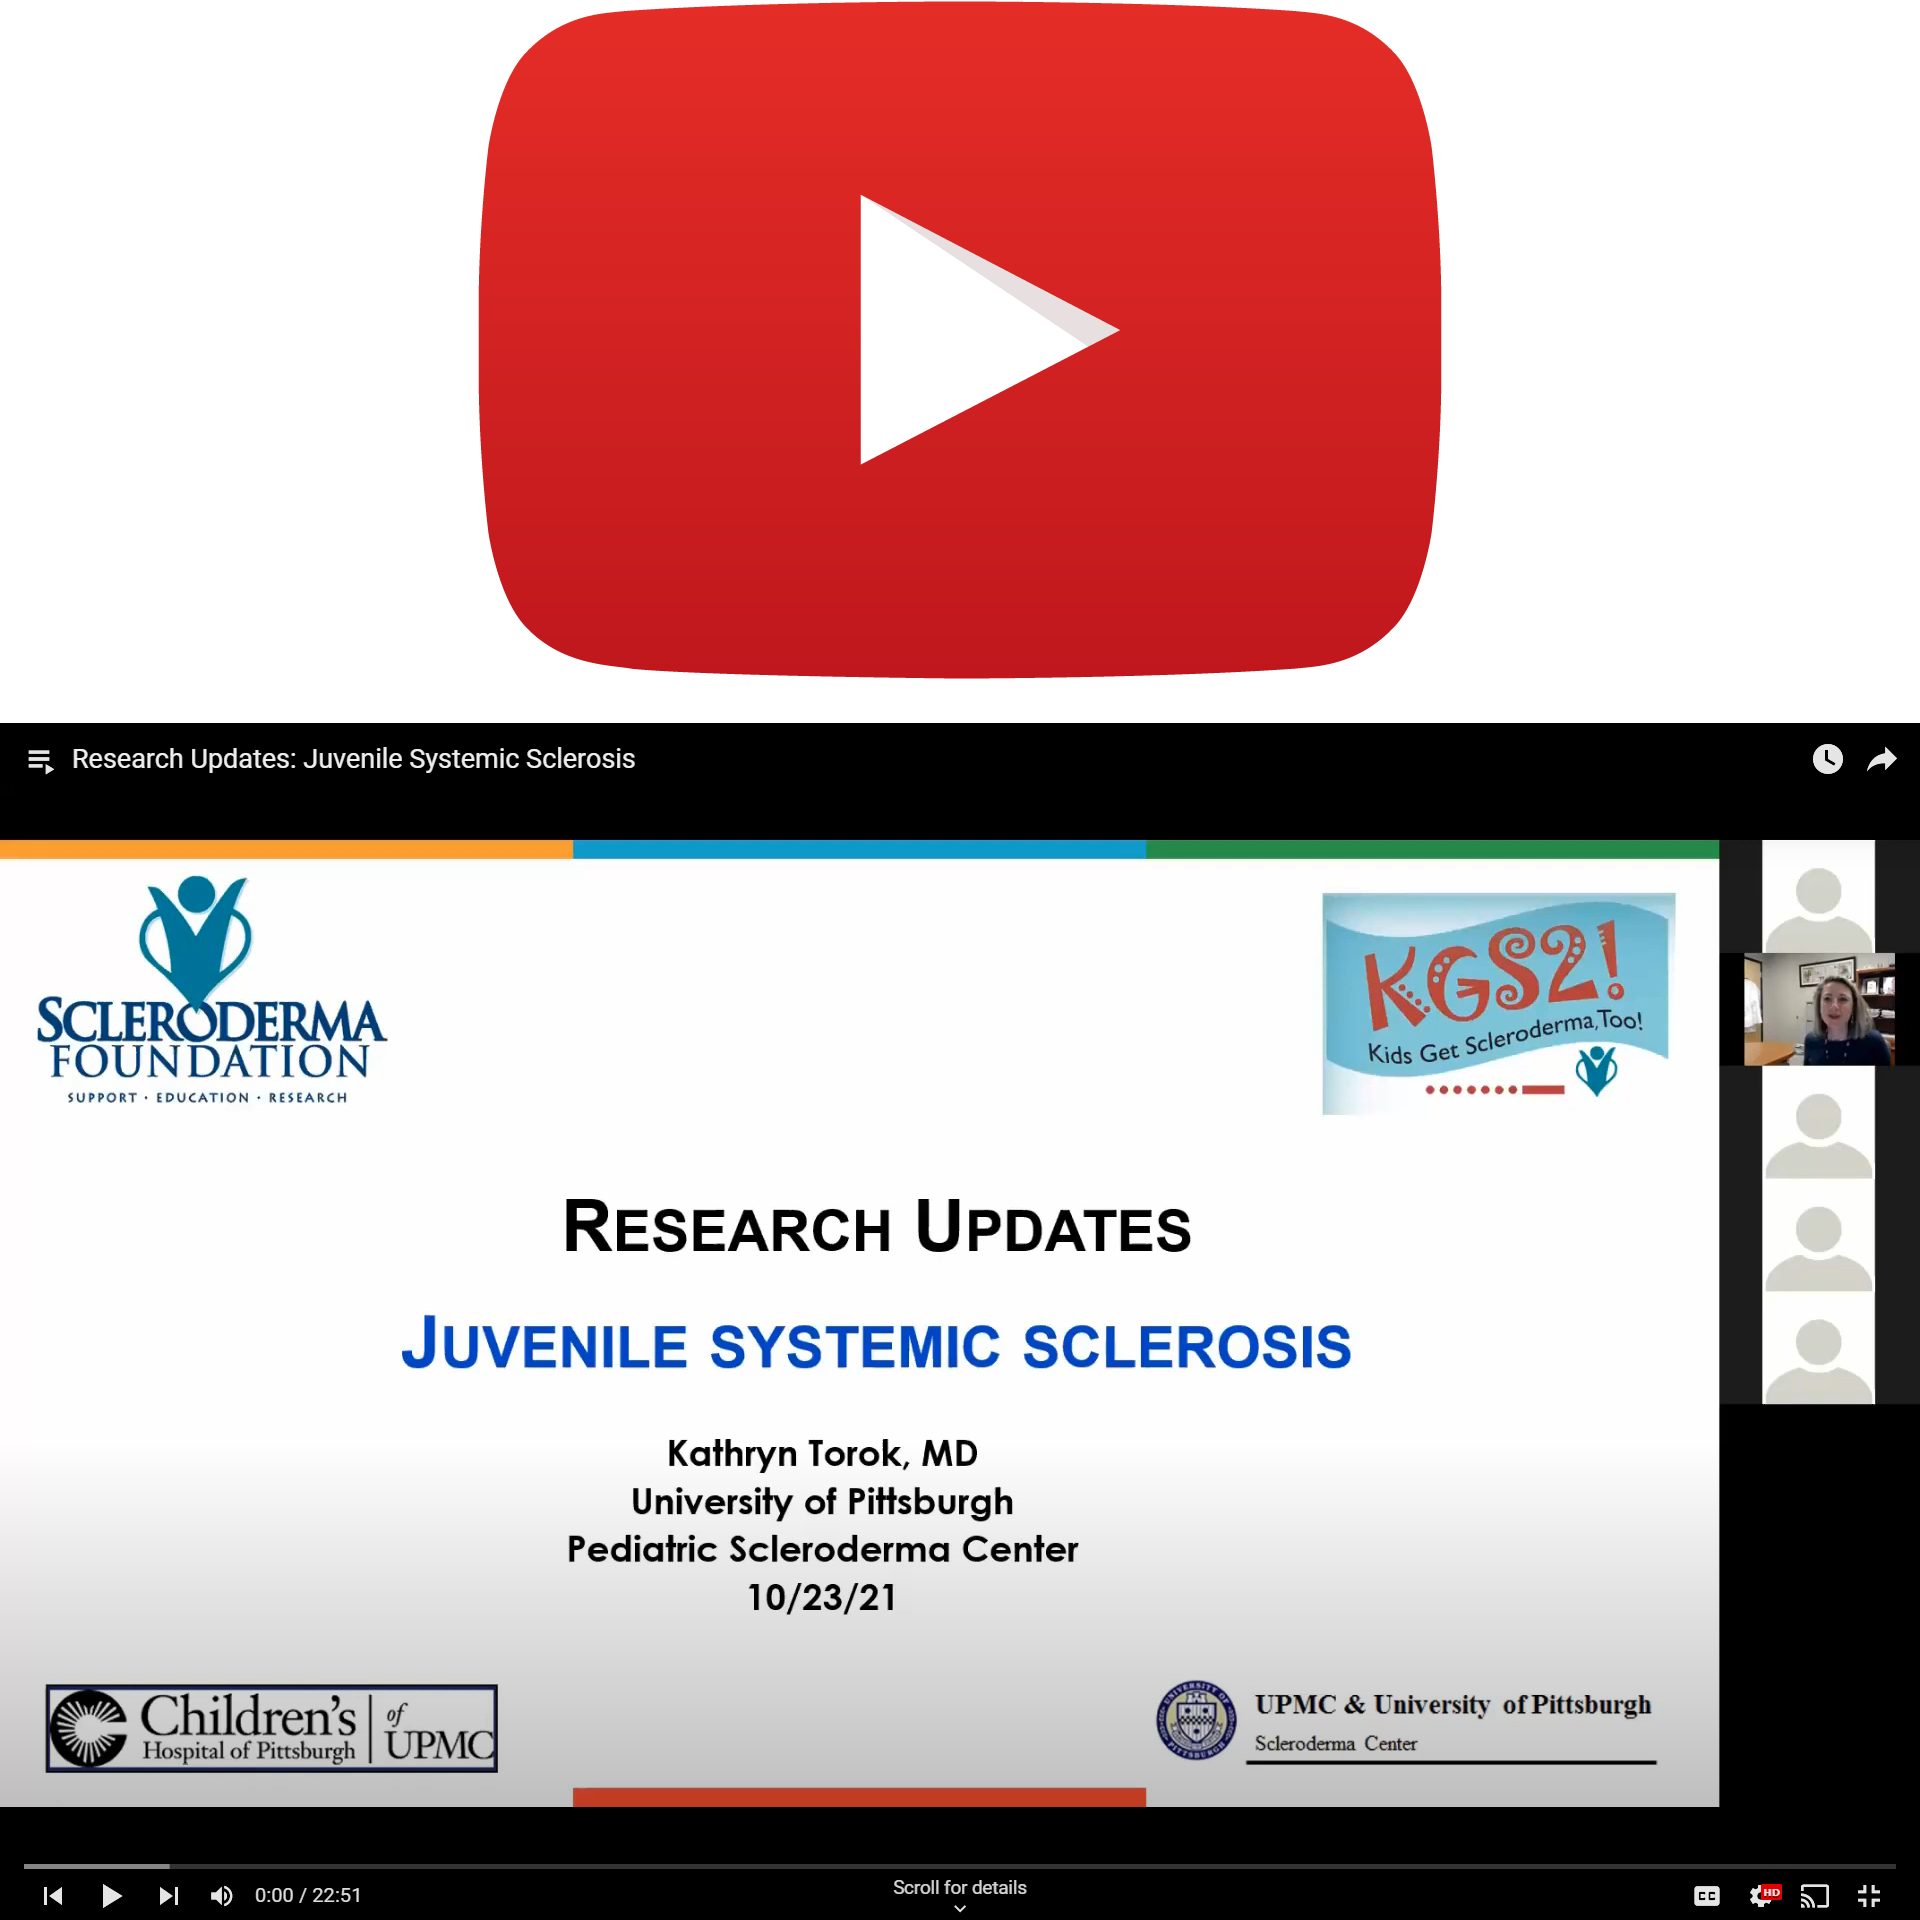 YouTube 2021 KGS2 Research Juvenile Systemic Torok